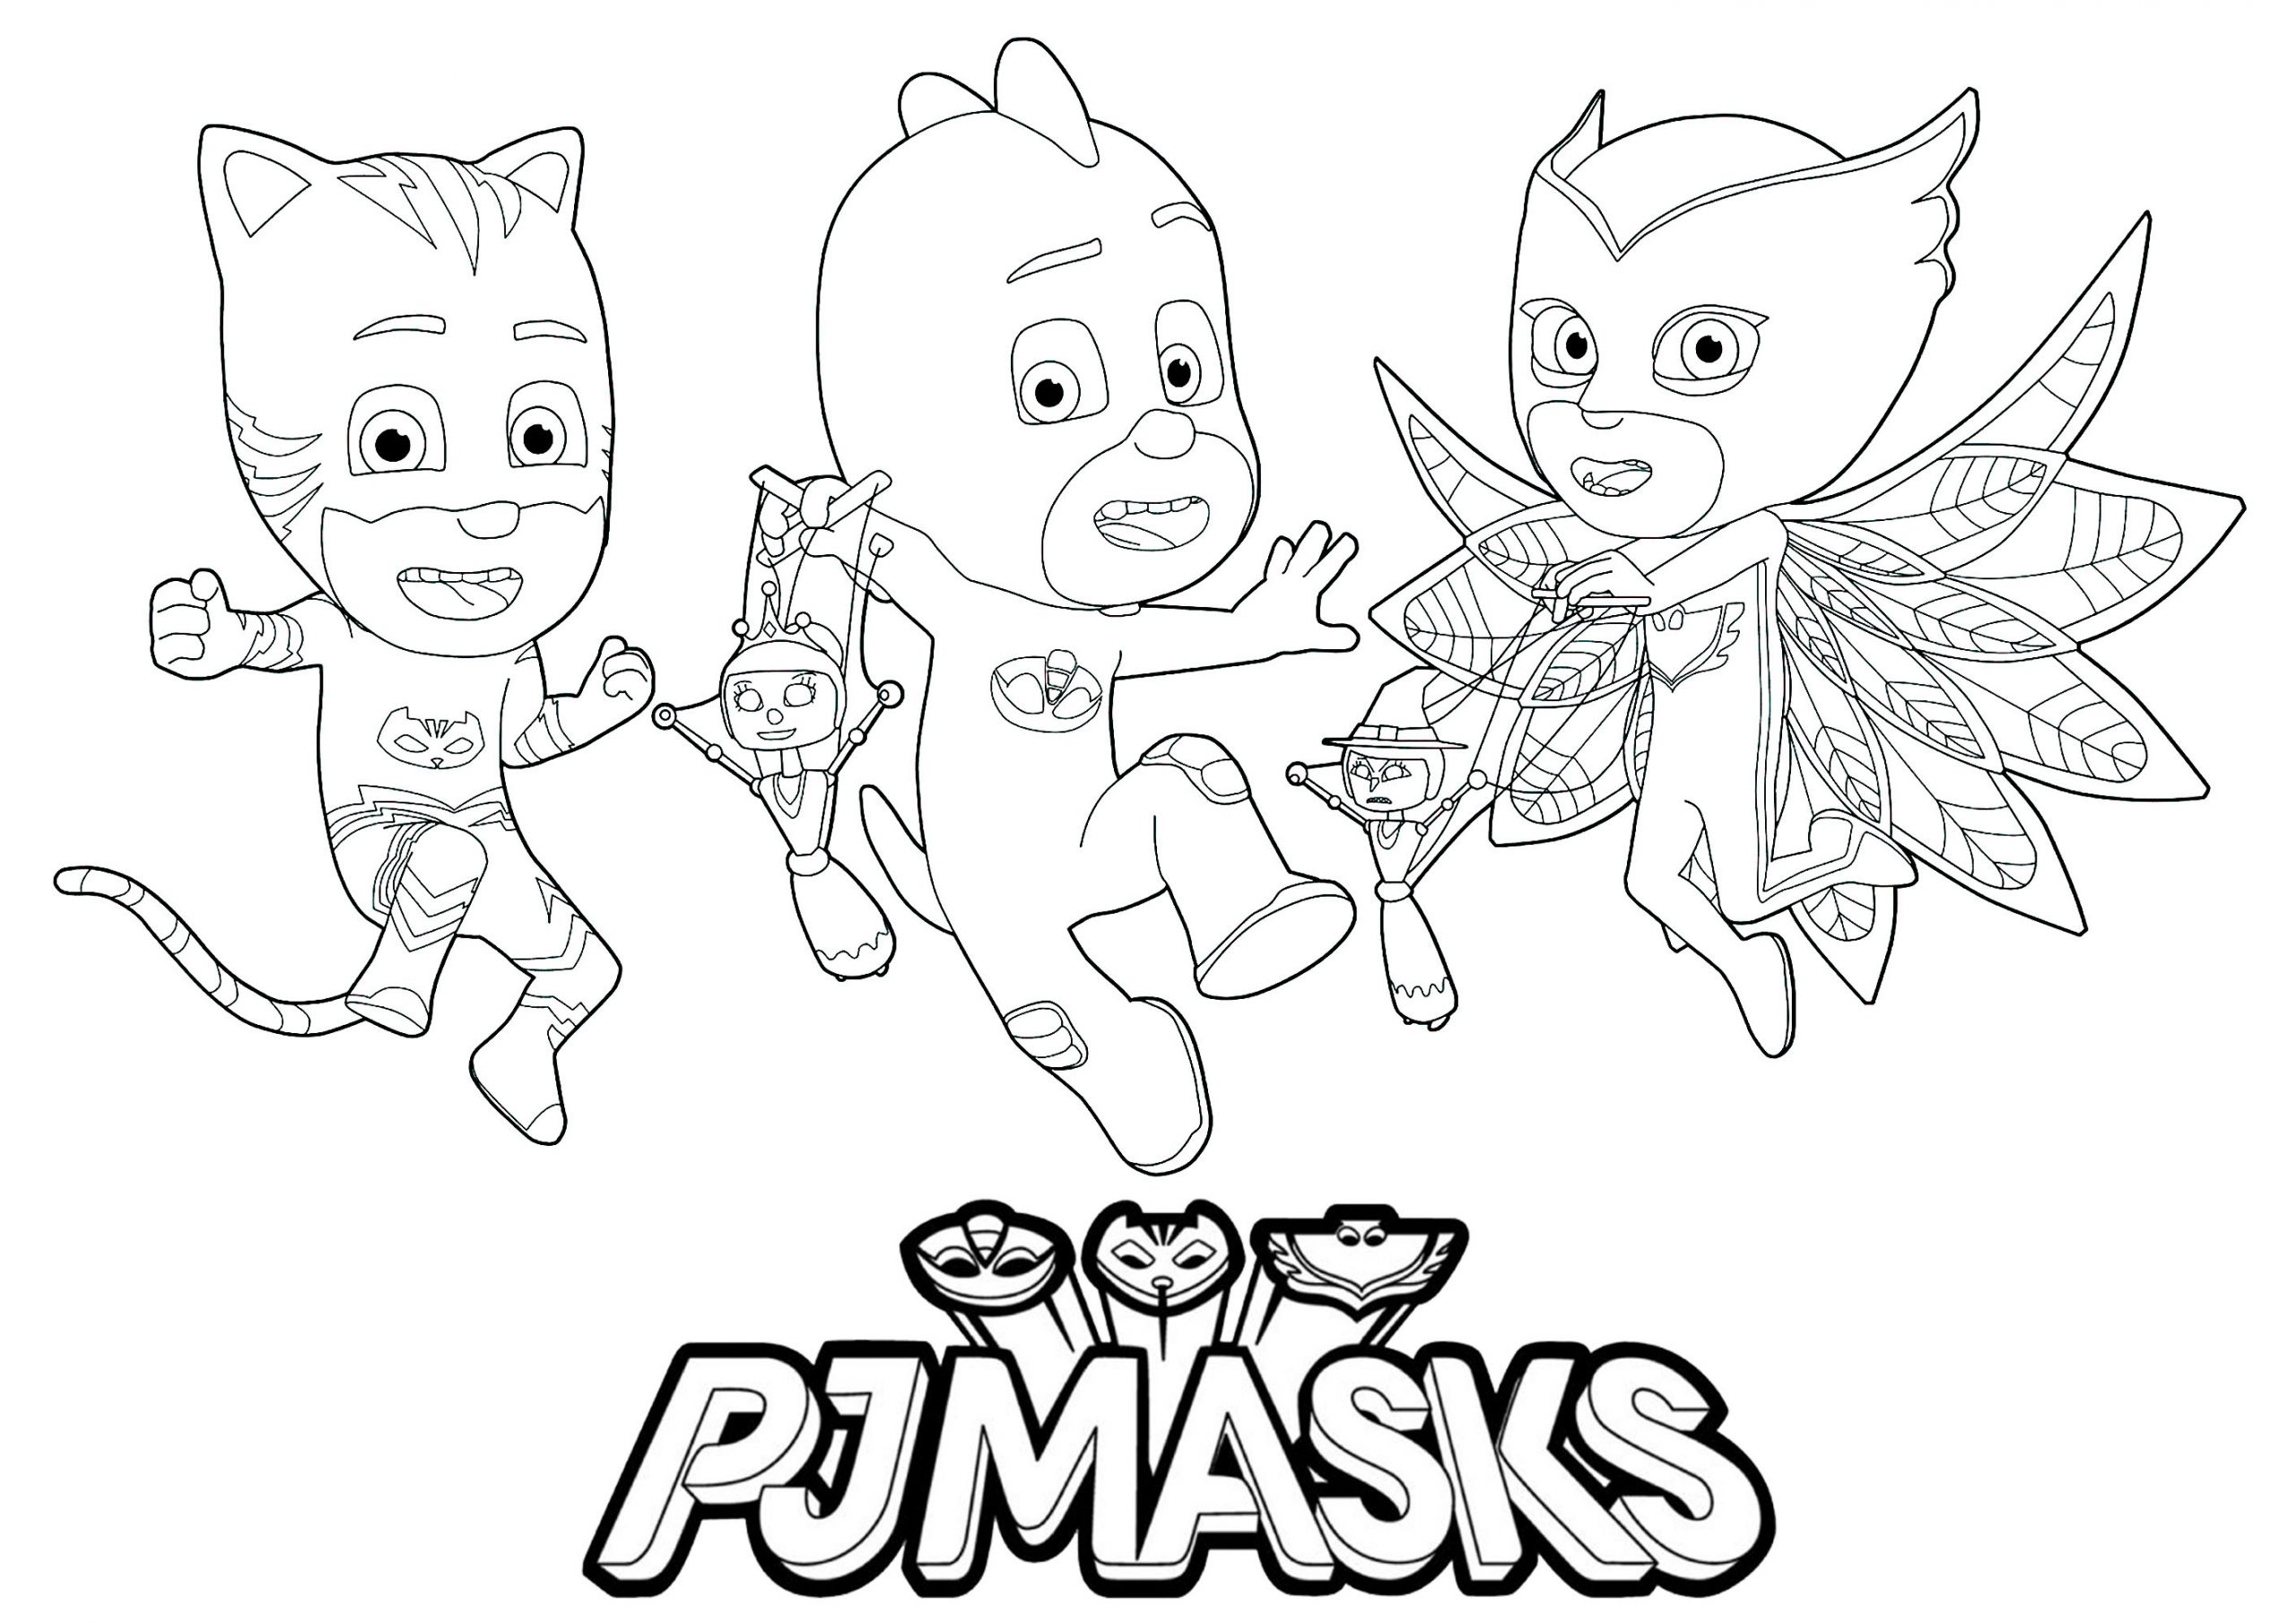 pj masks image=pj masks coloring pages for children pj masks 1